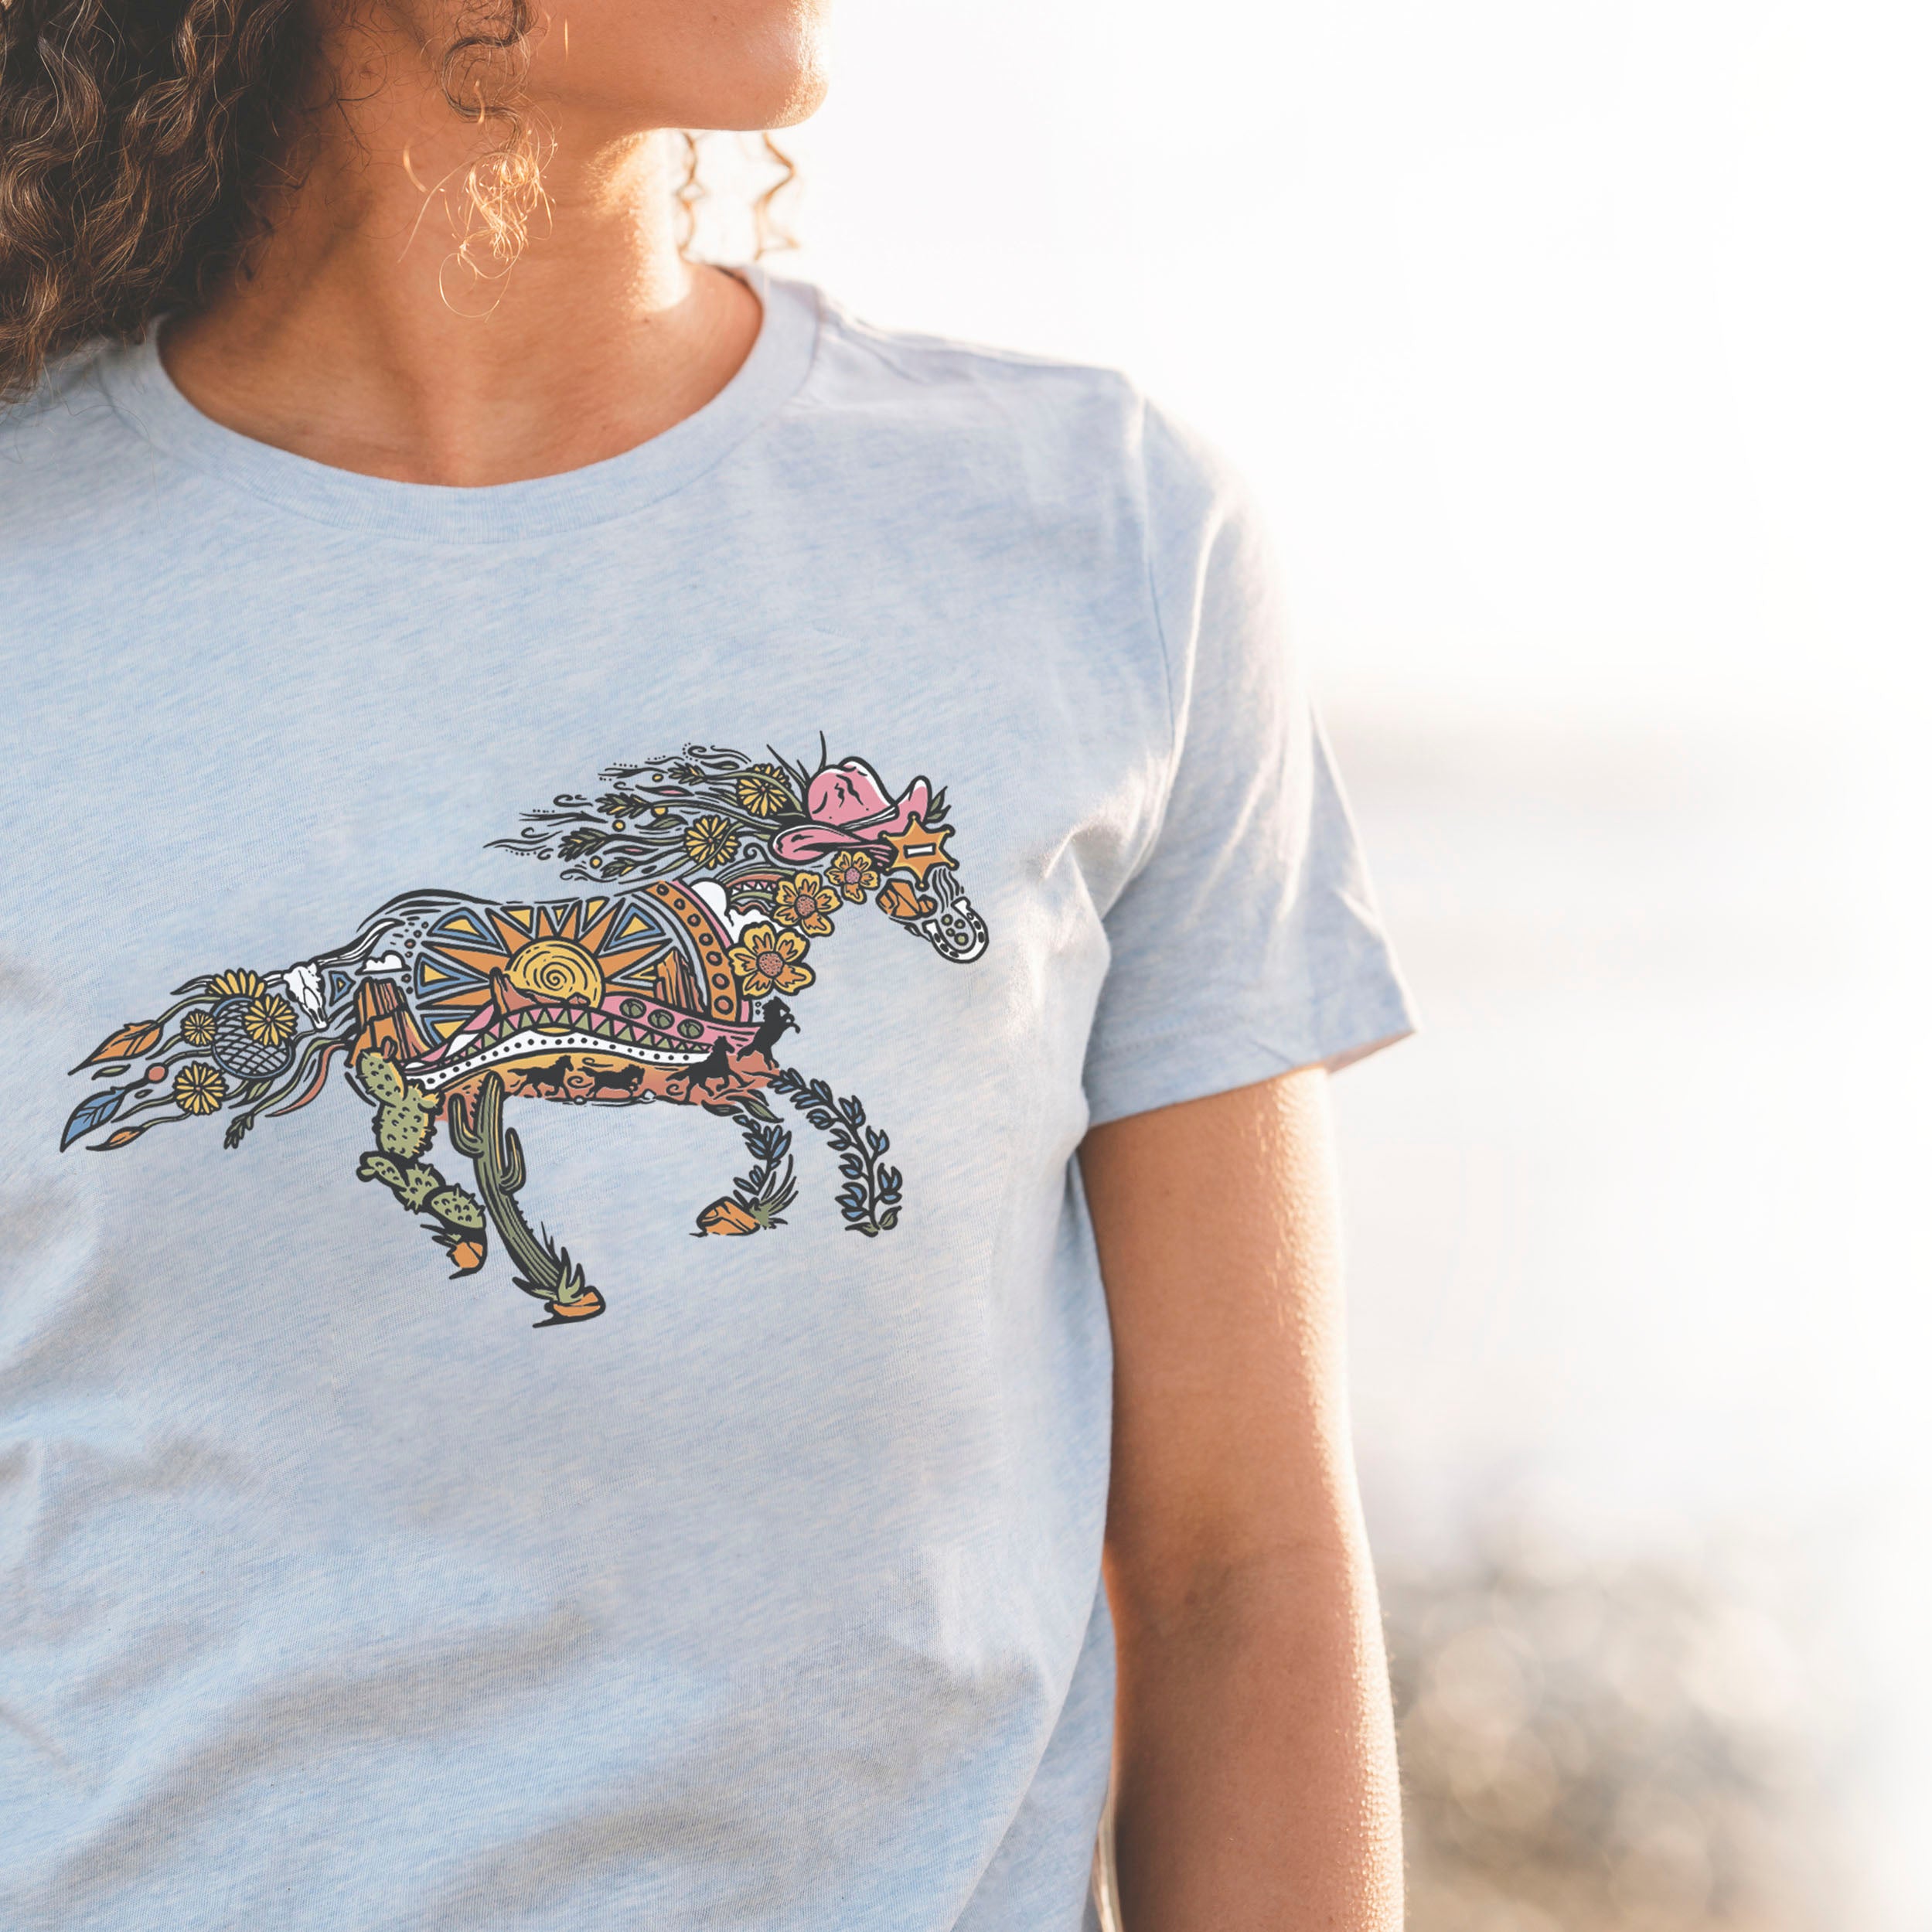 Boho Wild West Horse Women's Relaxed T-Shirt